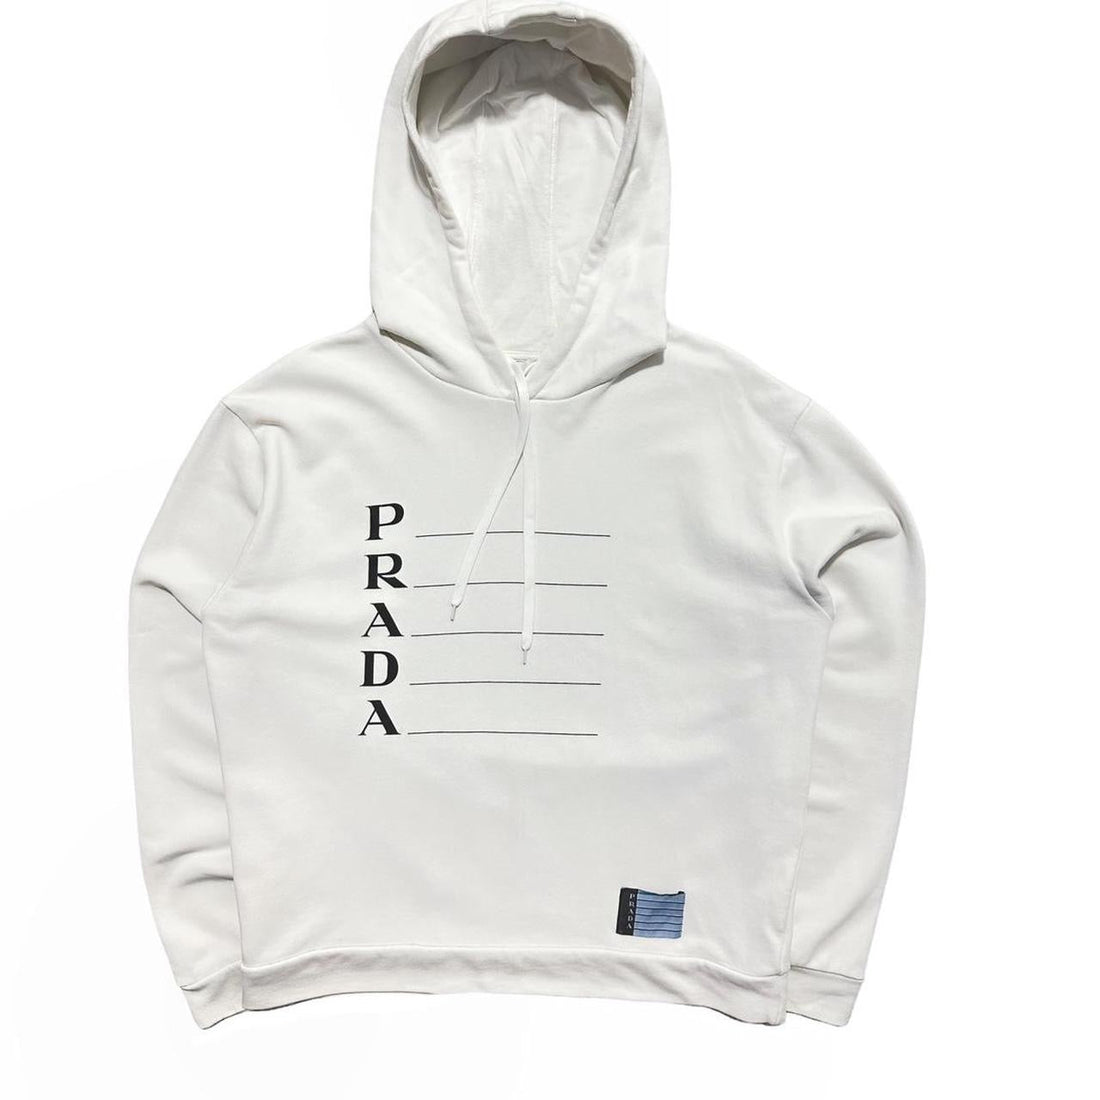 Prada pullover white drawstring hoodie